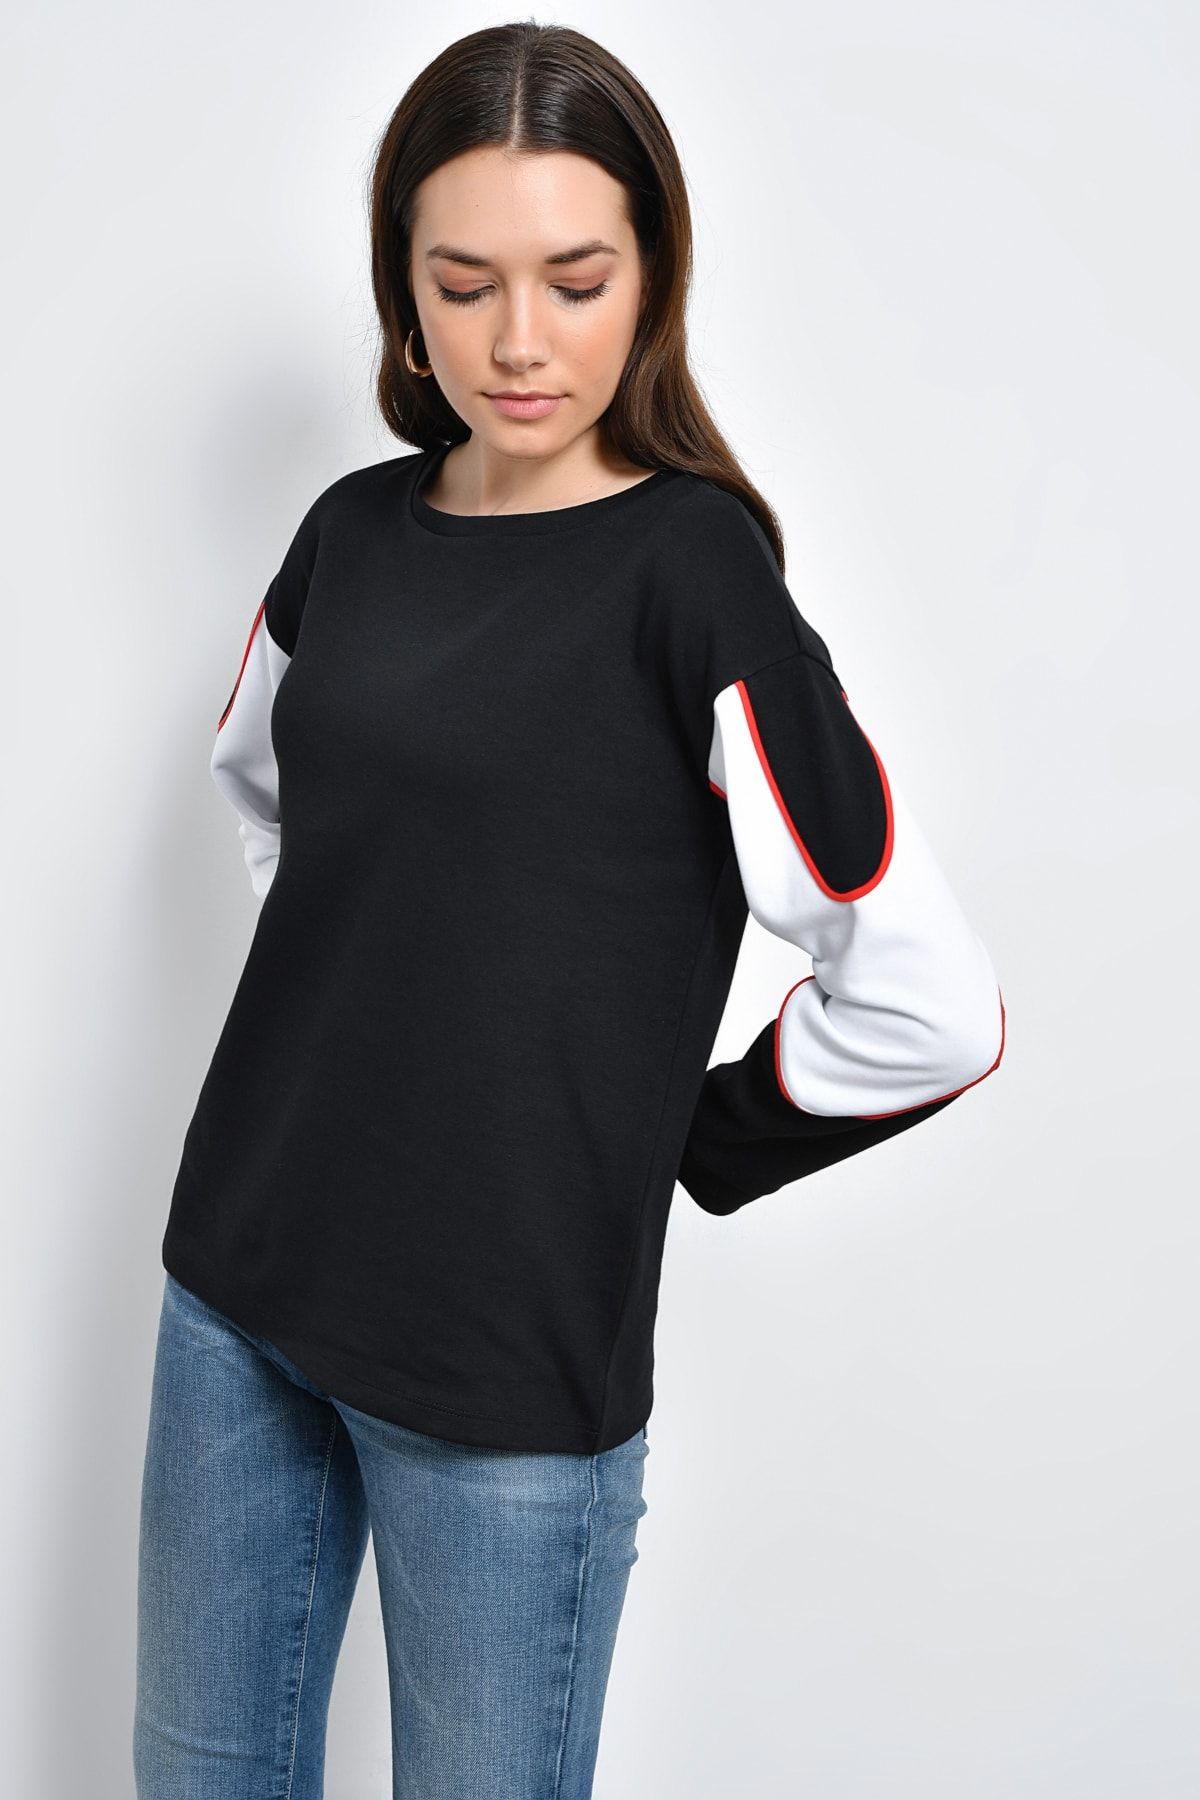 Hanna's Kadın Siyah Kontrast Renkli Uzun Kollu Kalın Kumaştan T-shirt